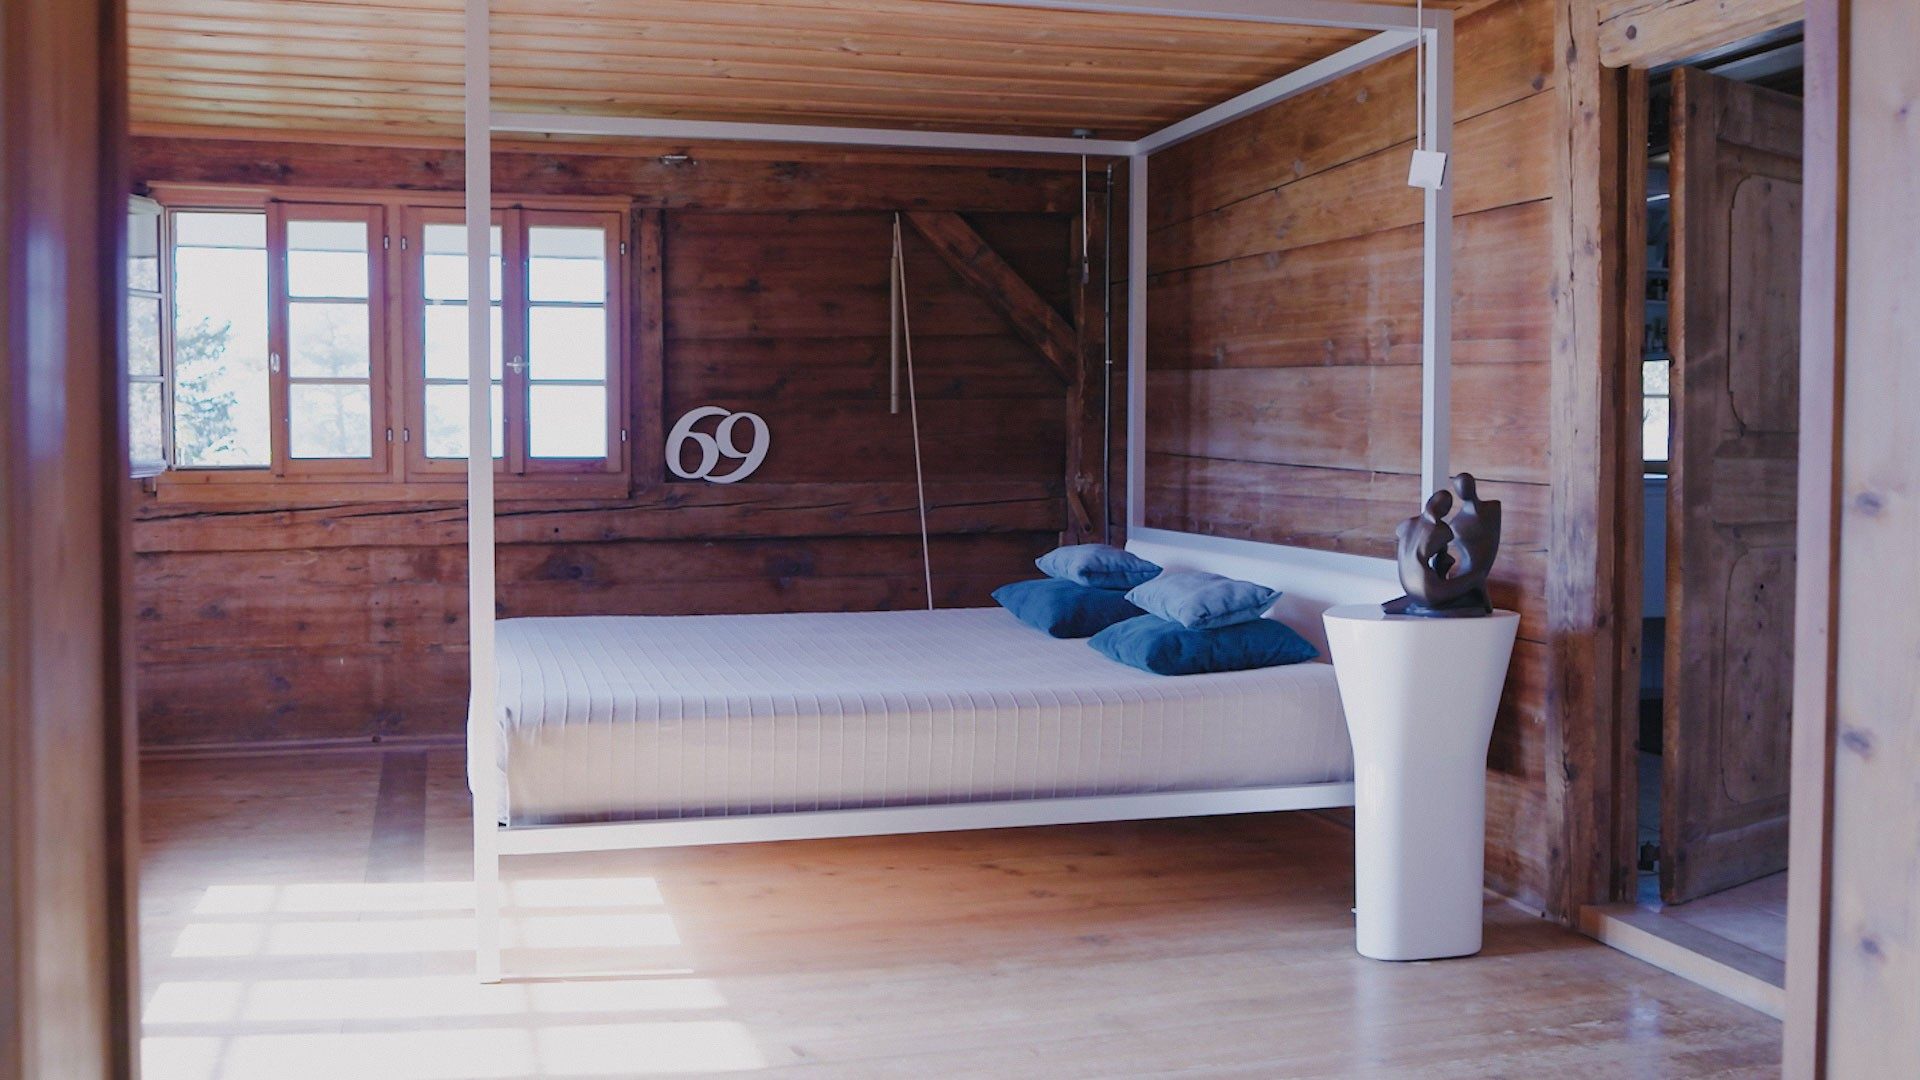 Un letto a baldacchino è posizionato in una camera da letto con pareti di legno.